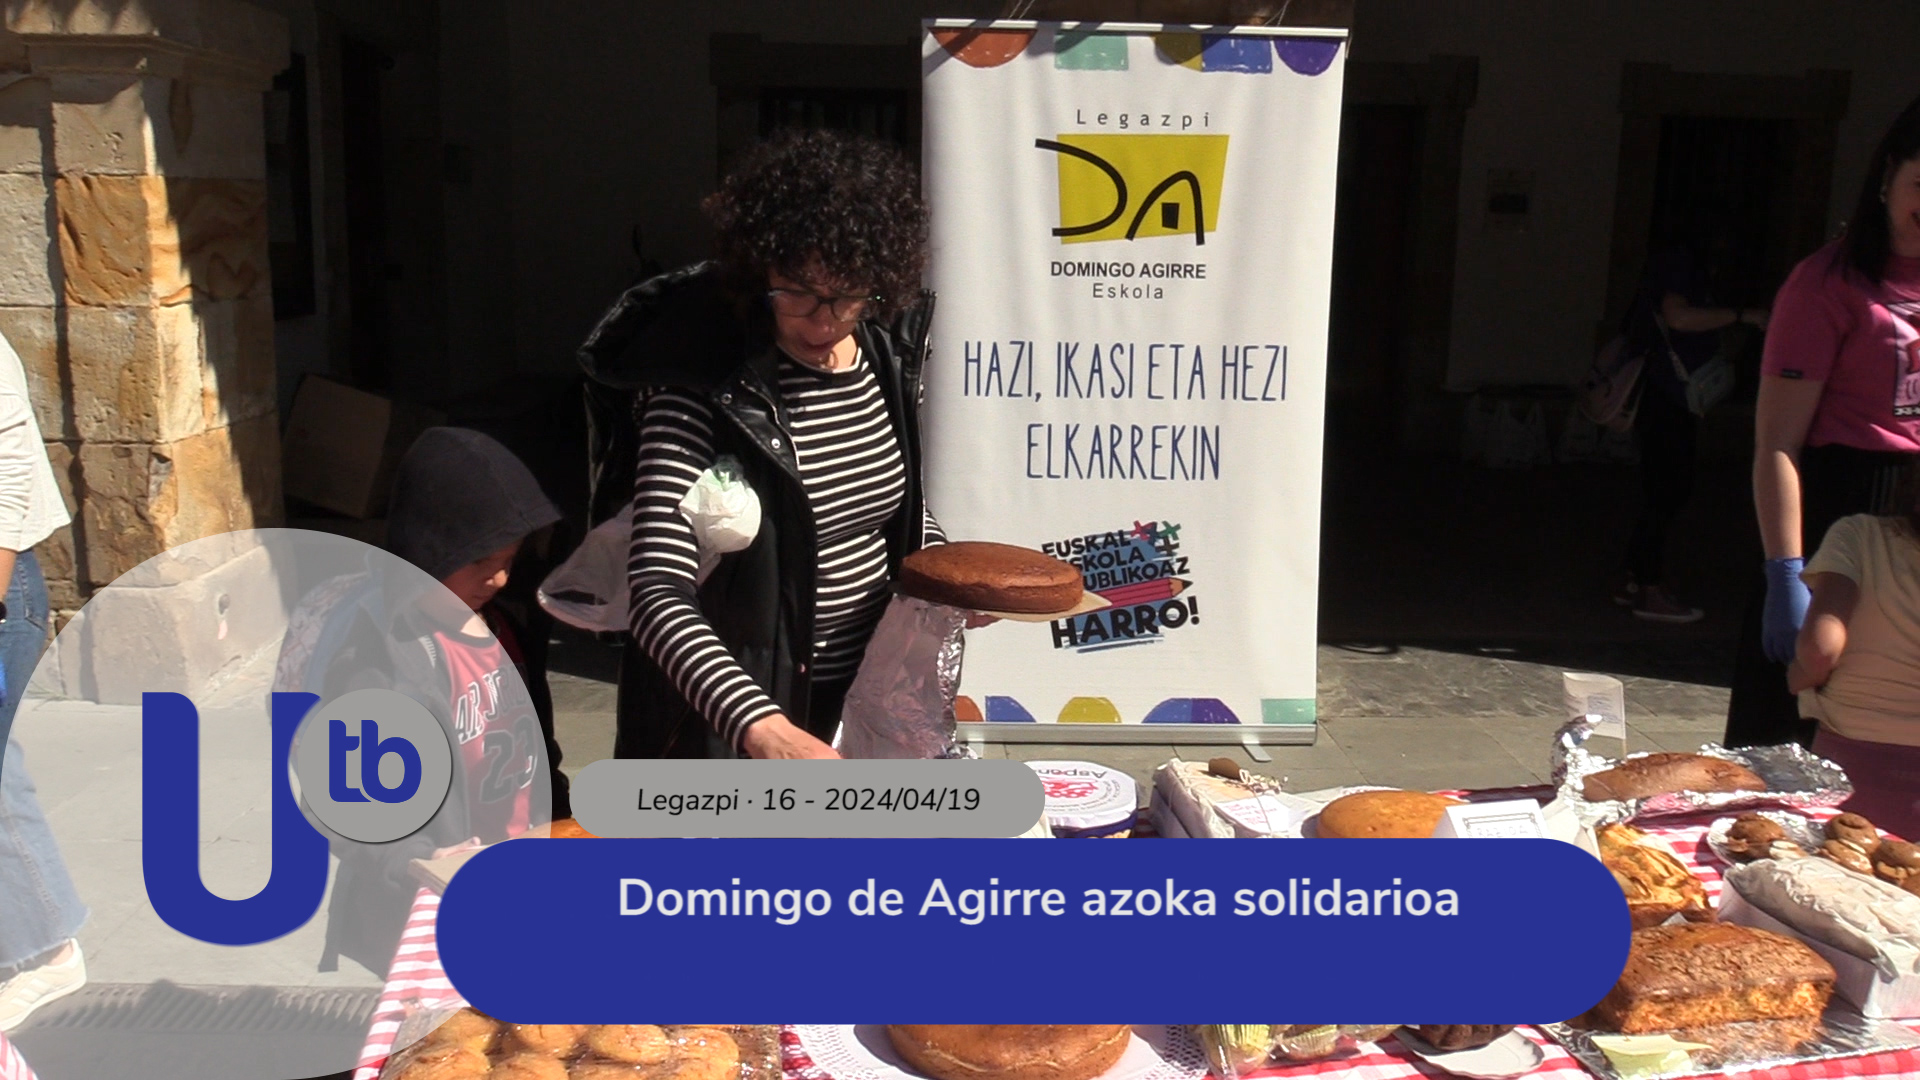 Feria solidaria Domingo de Agirre / Domingo de Agirre azoka solidarioa